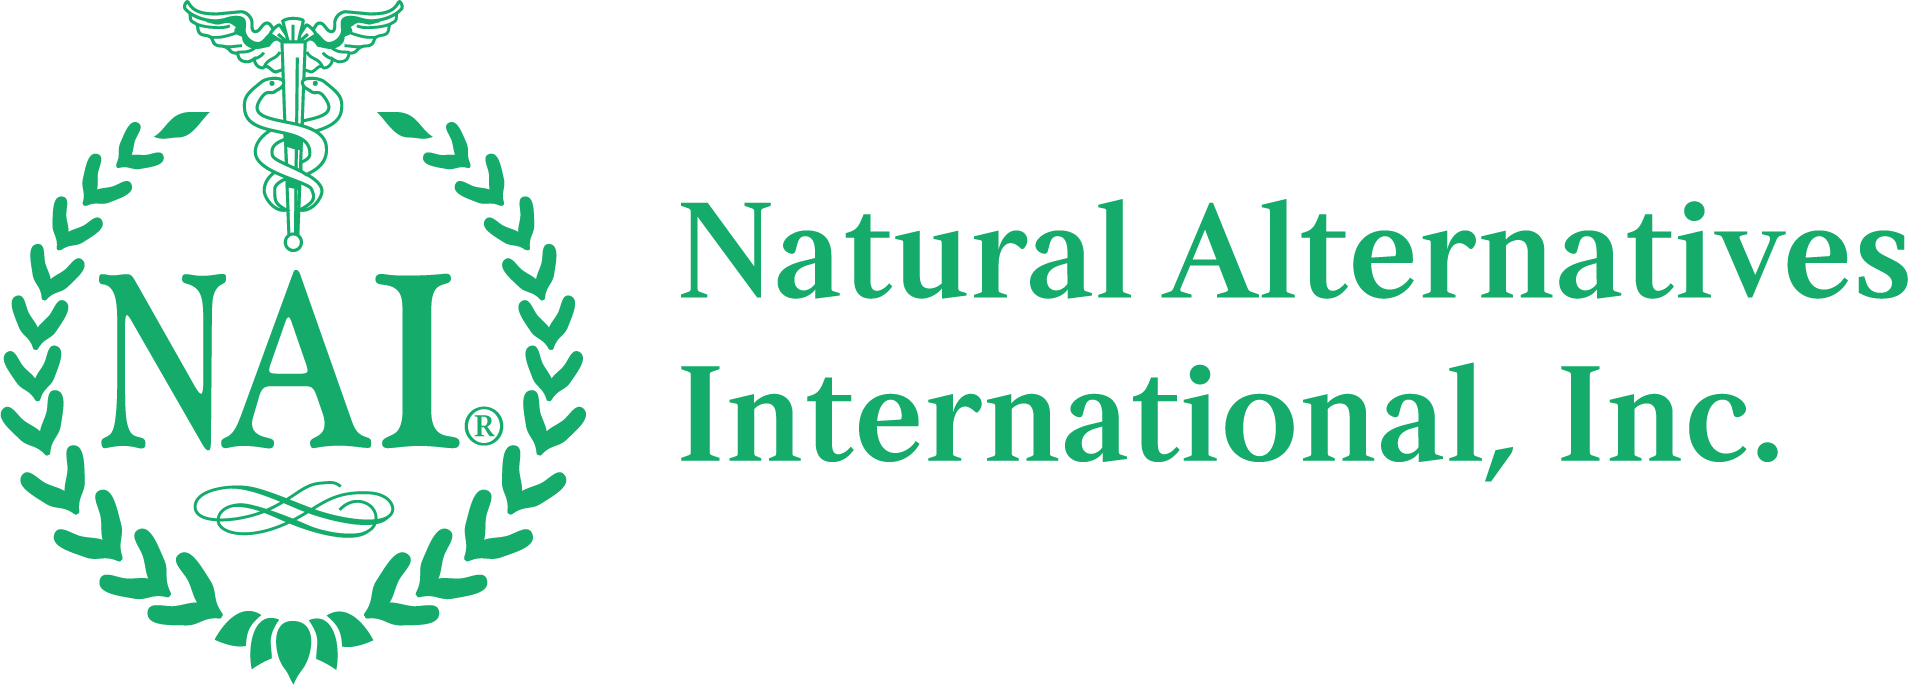 NAI Full Logo Green2.0.png